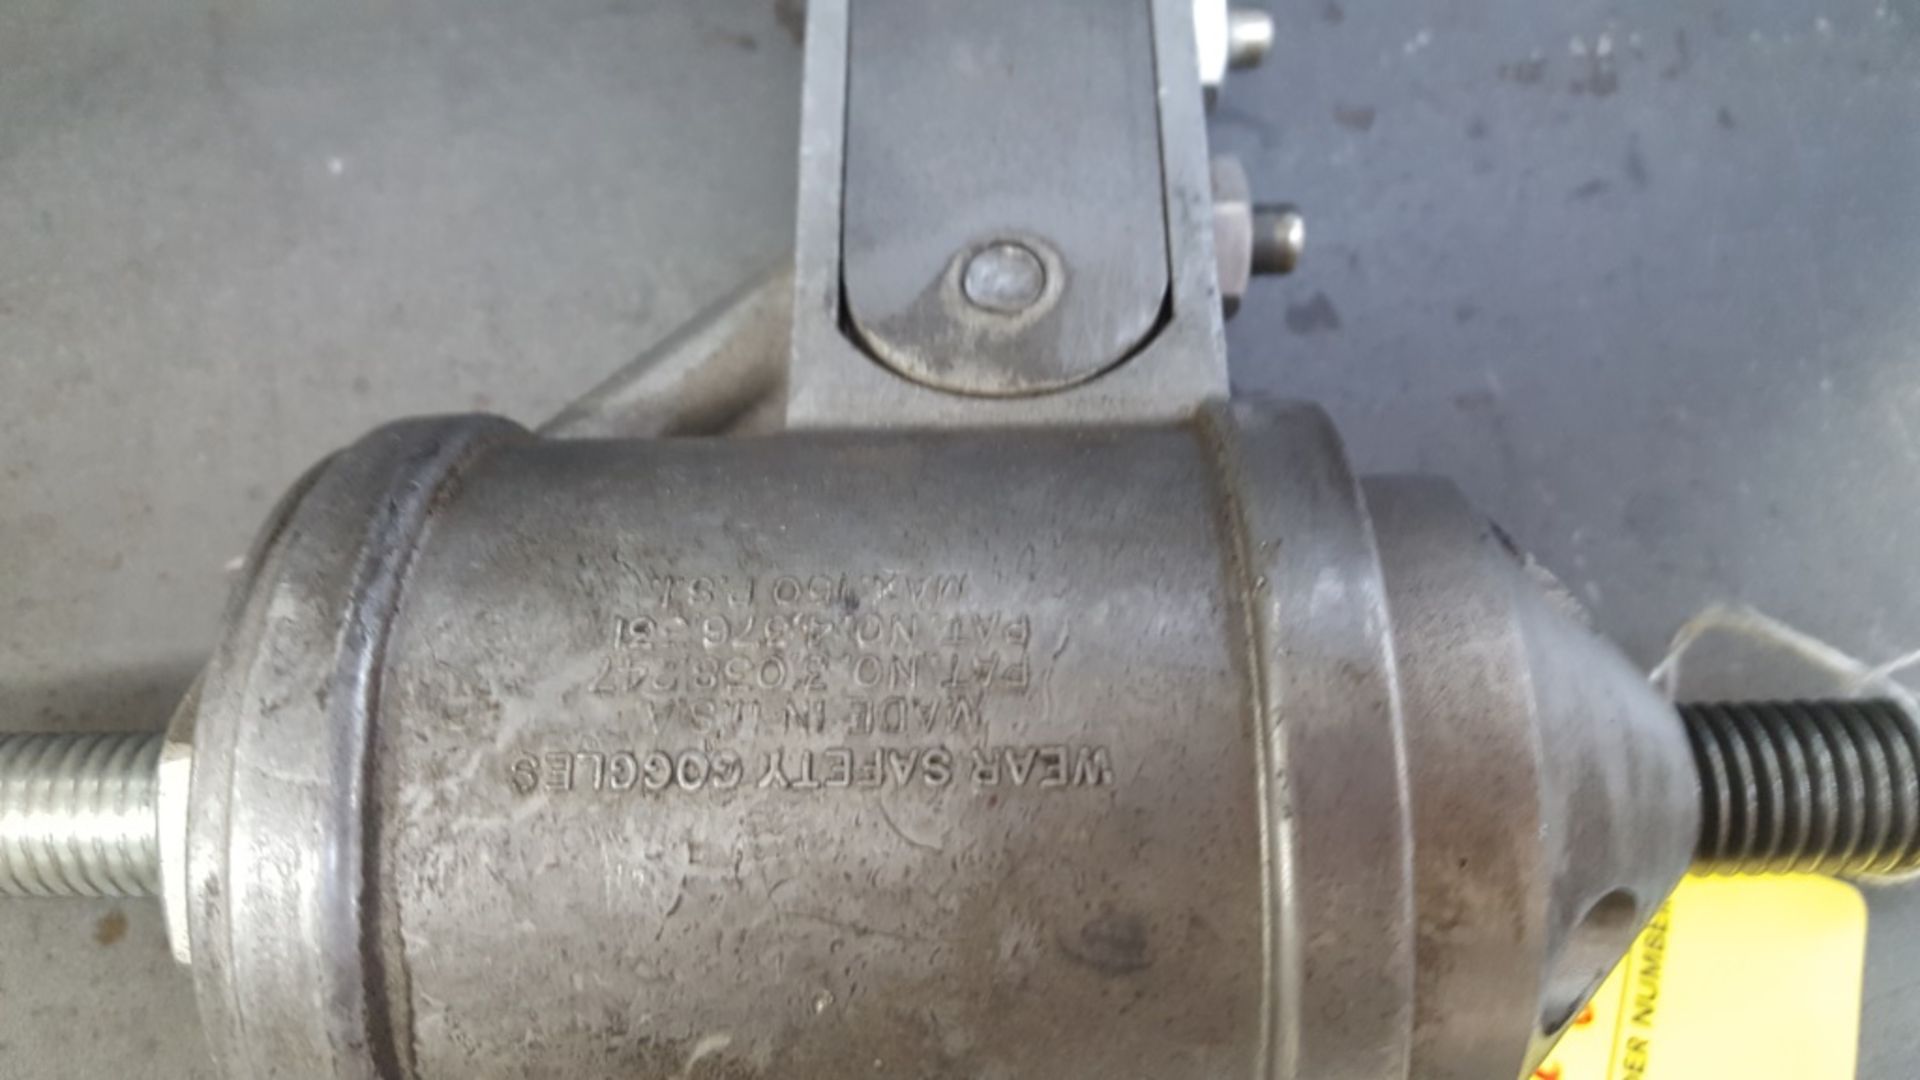 Regis RL700 Pneumatic Valve Spring Compressor - Image 2 of 2